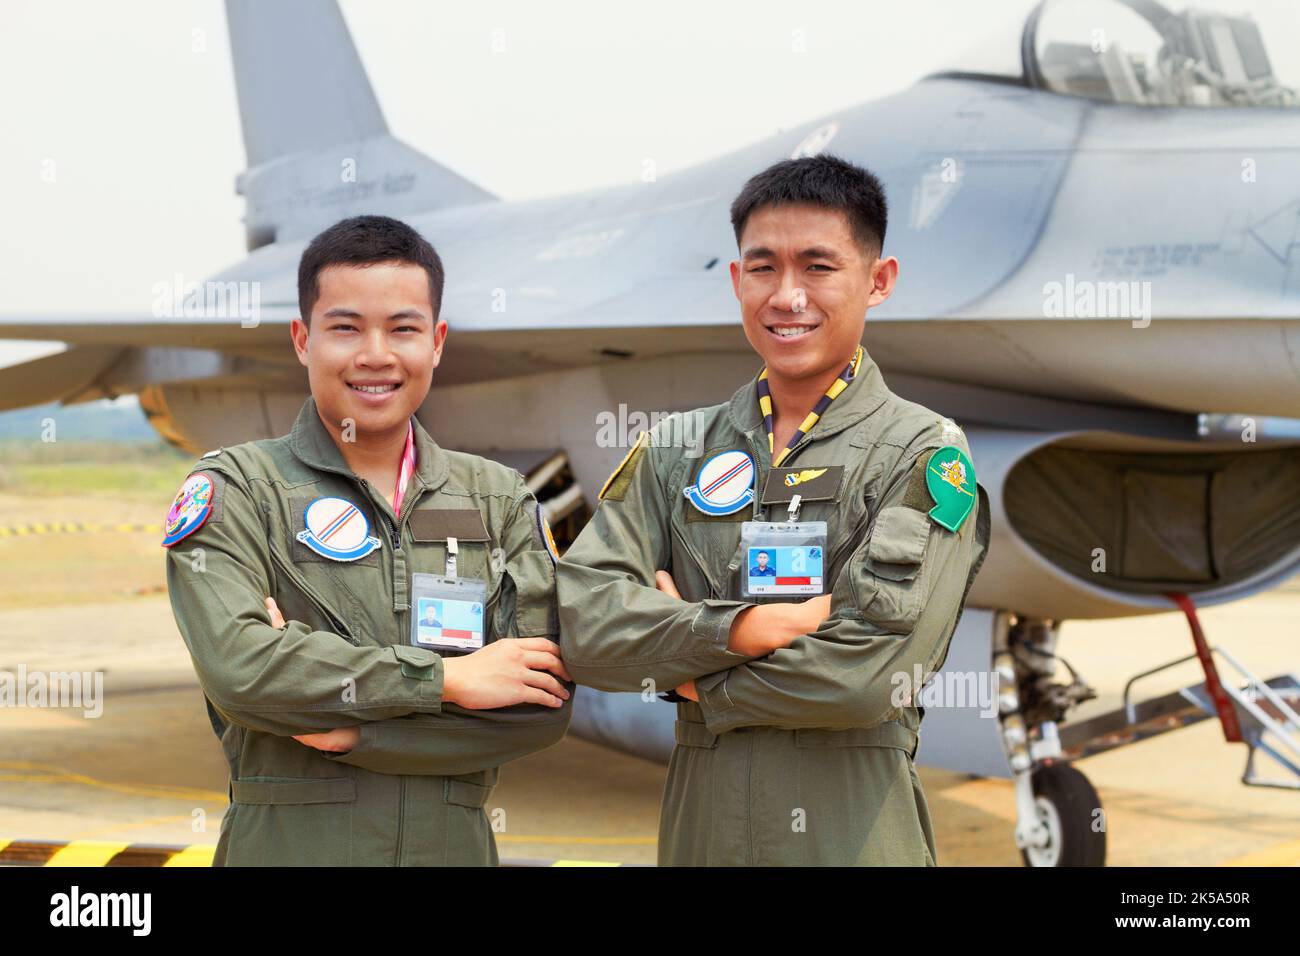 Bereit für einen Hundekampf. Eine Aufnahme von zwei selbstbewussten asiatischen Kampfflugzeugen. Stockfoto